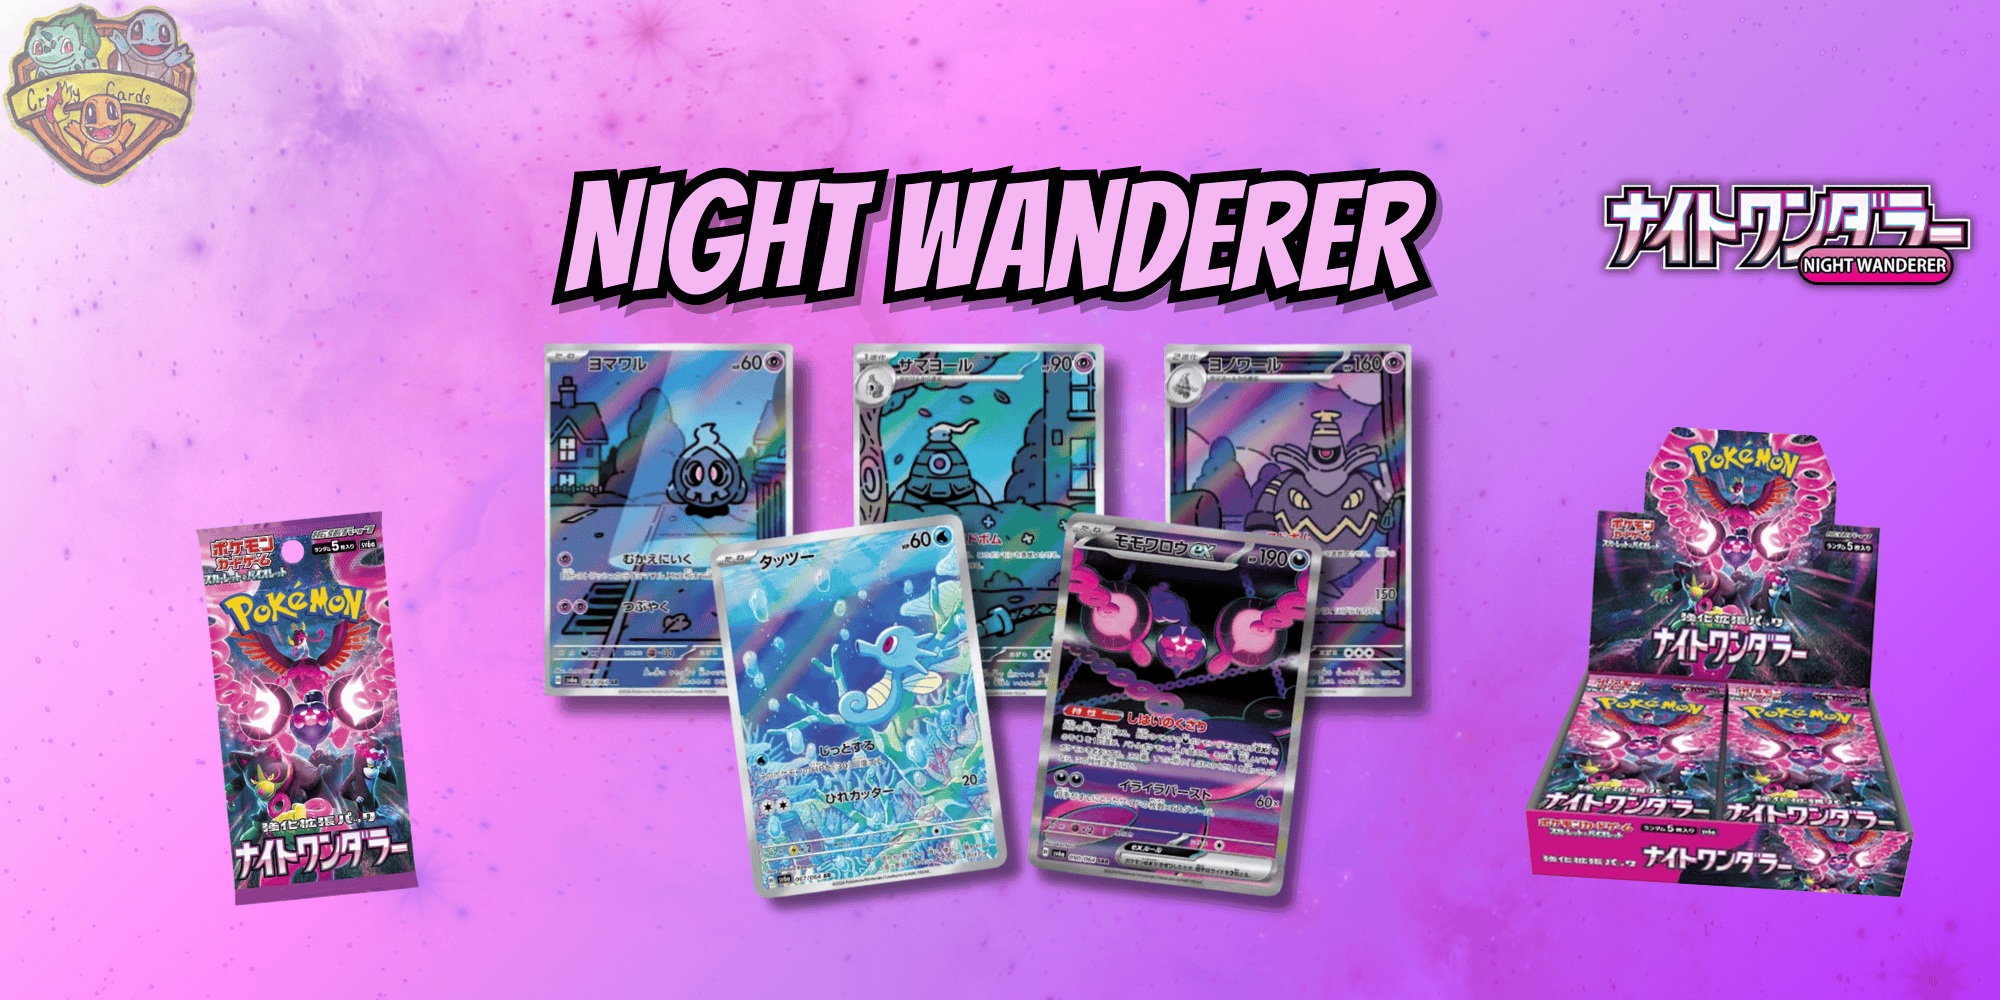 Die seltensten Pokémon aus Night Wanderer